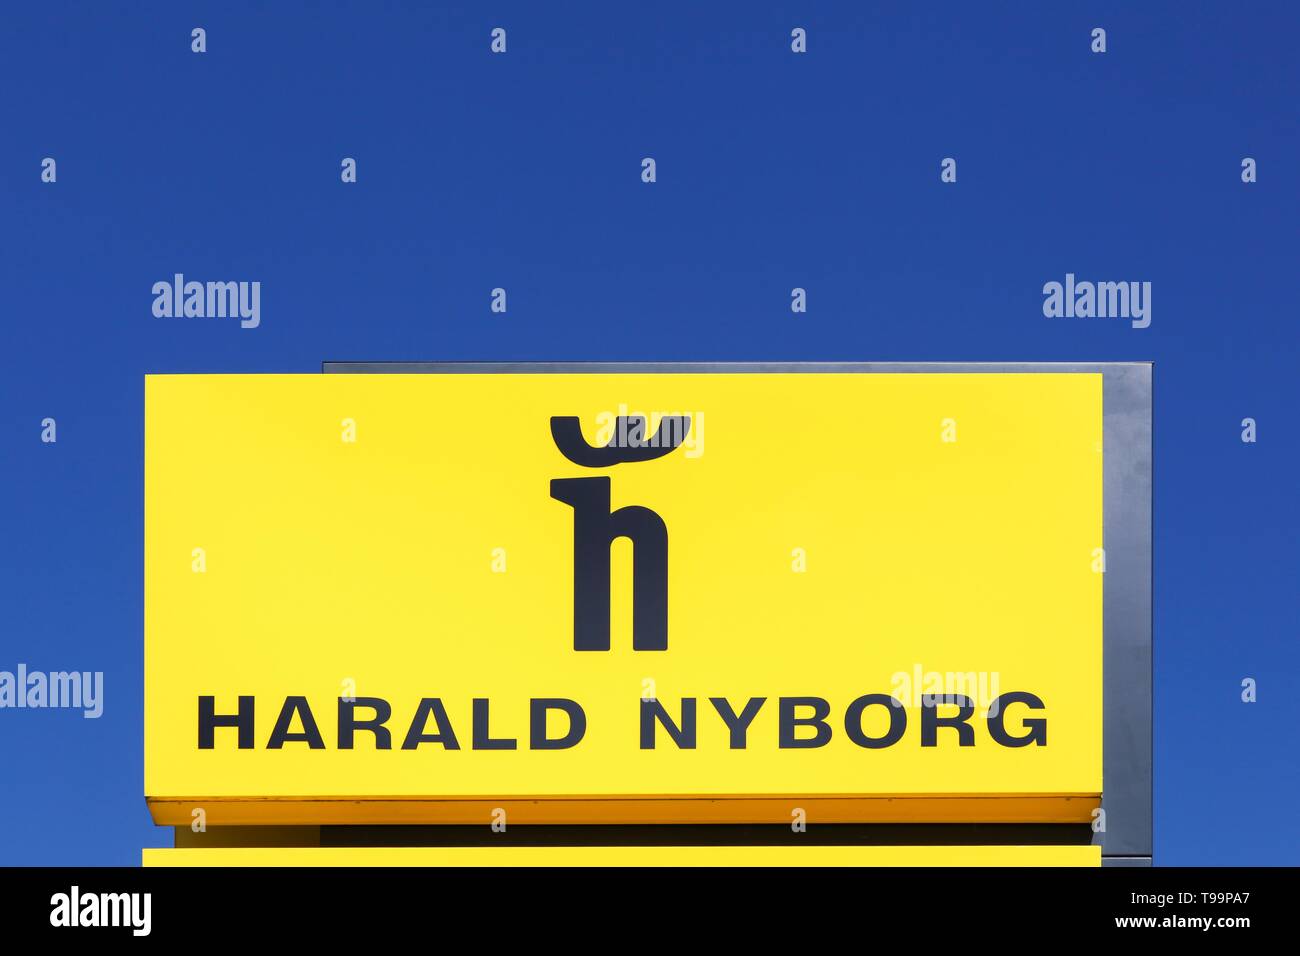 Nyborg Stock Photos & Nyborg Stock Images - Alamy